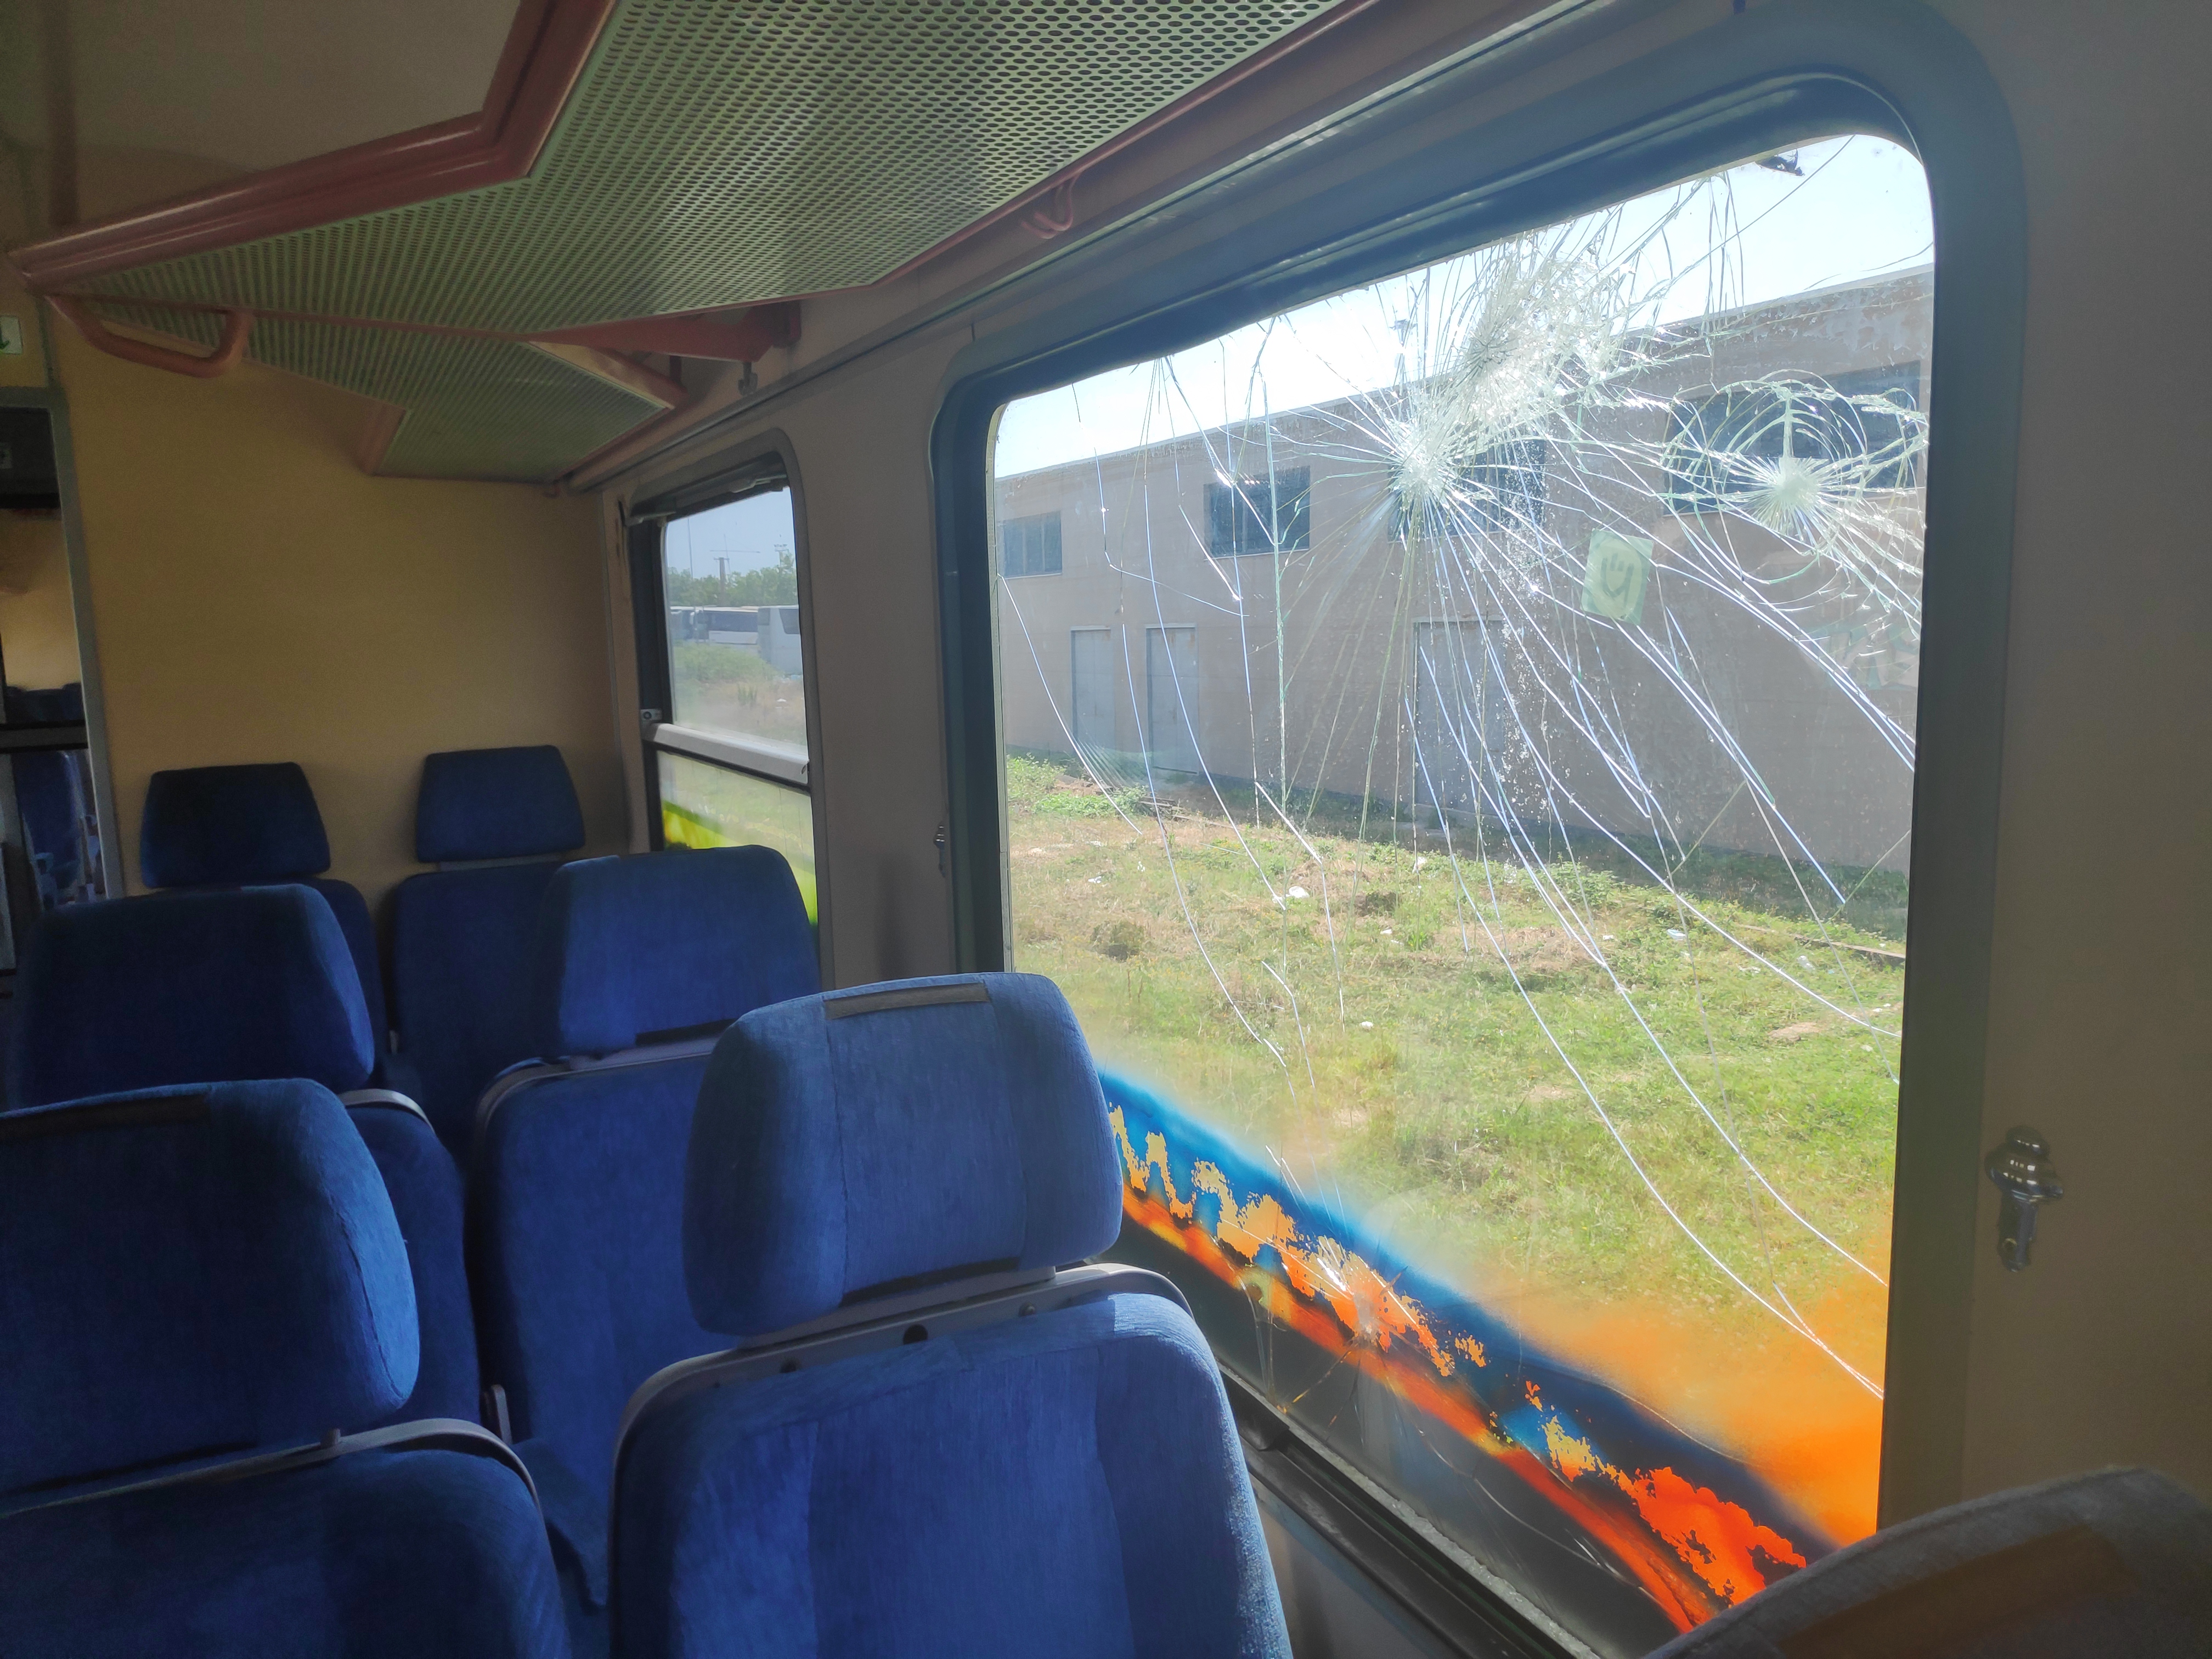 De stilstaande trein is een geliefd object van vandalen. © Guus Puylaert